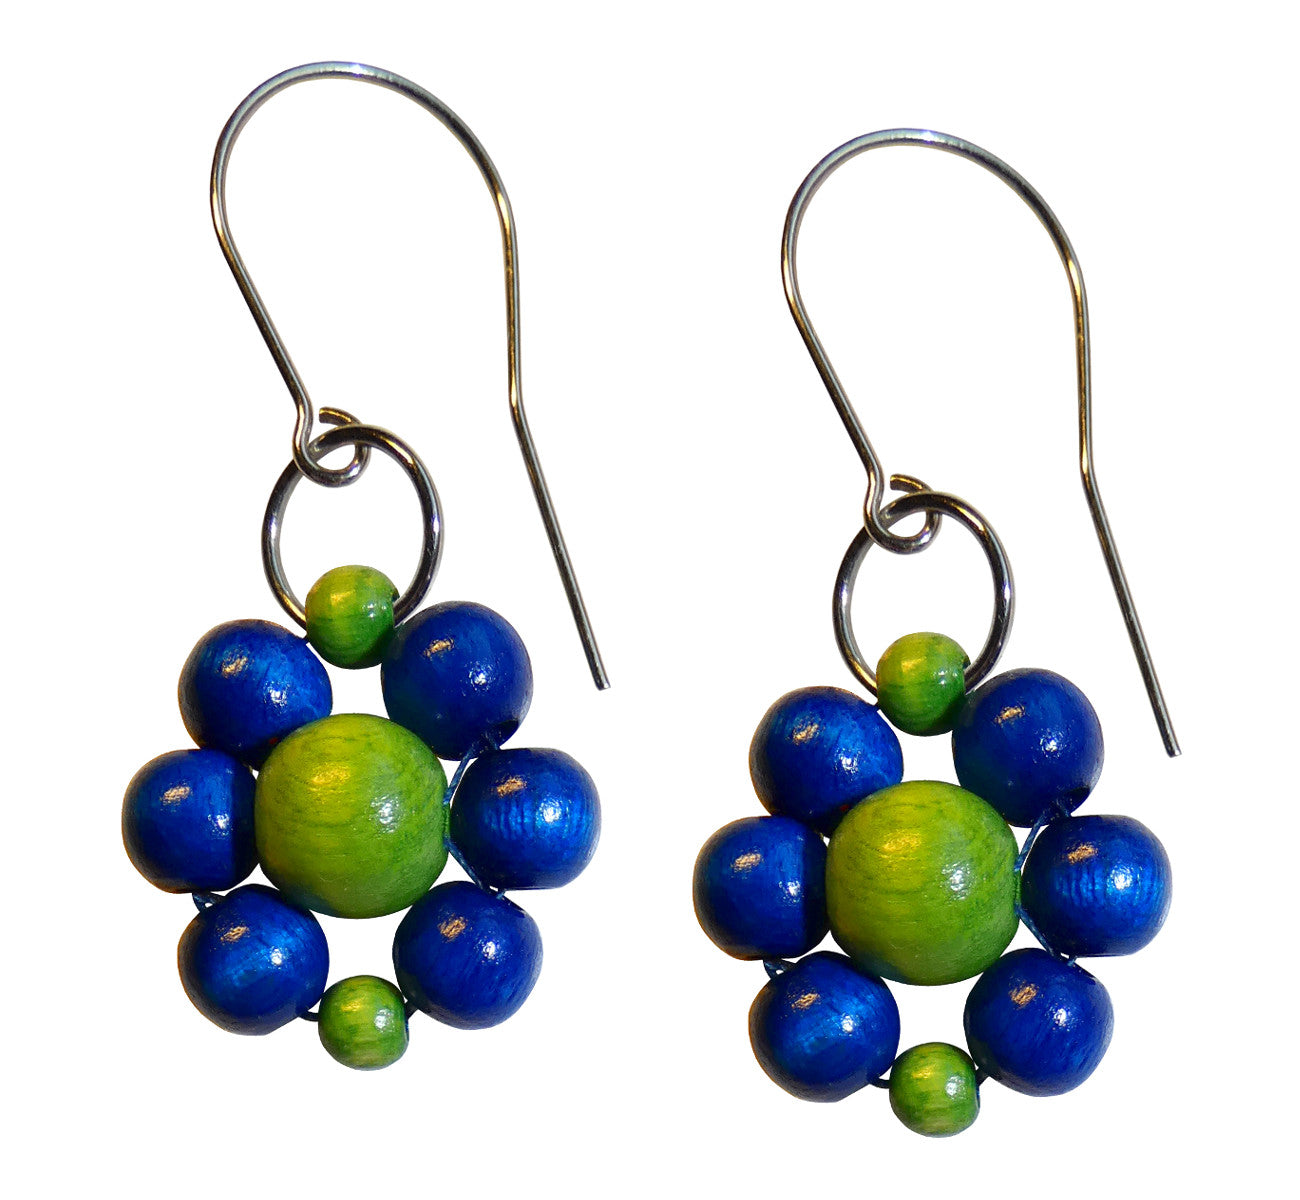 Wood flower earrings, blue and green wooden beads, flower diameter 4 cm, 1.57”, artisan handmade.